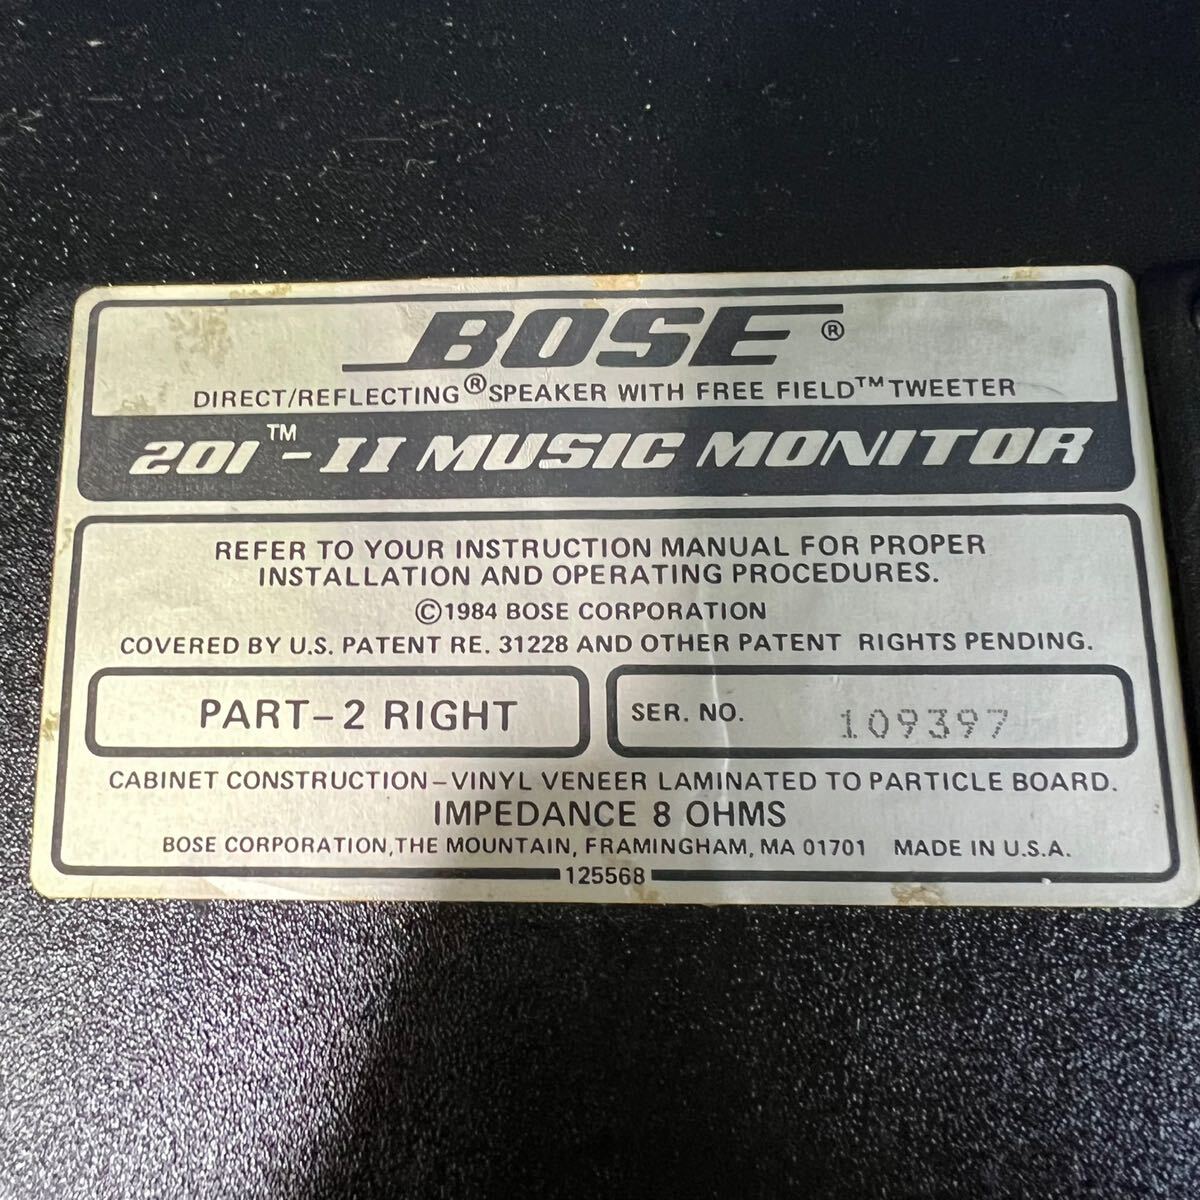 西542 BOSE ボーズ【201-Ⅱ MUSIC MONITOR】 スピーカー ペア 中古 ミュージックモニター 音楽機器 オーディオ機器の画像6